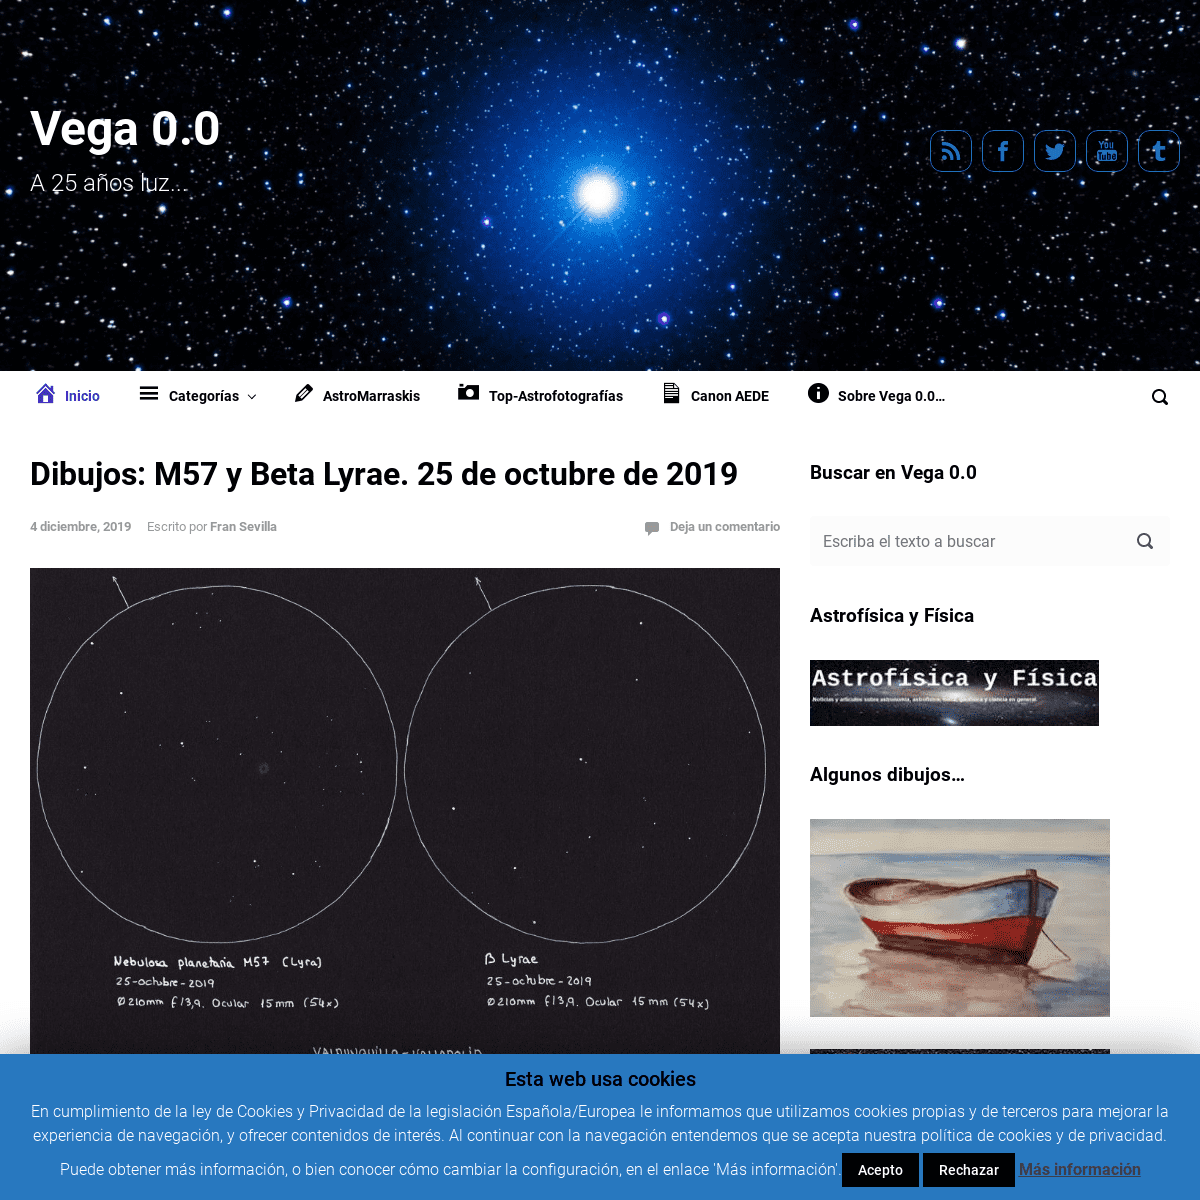 A complete backup of vega00.com